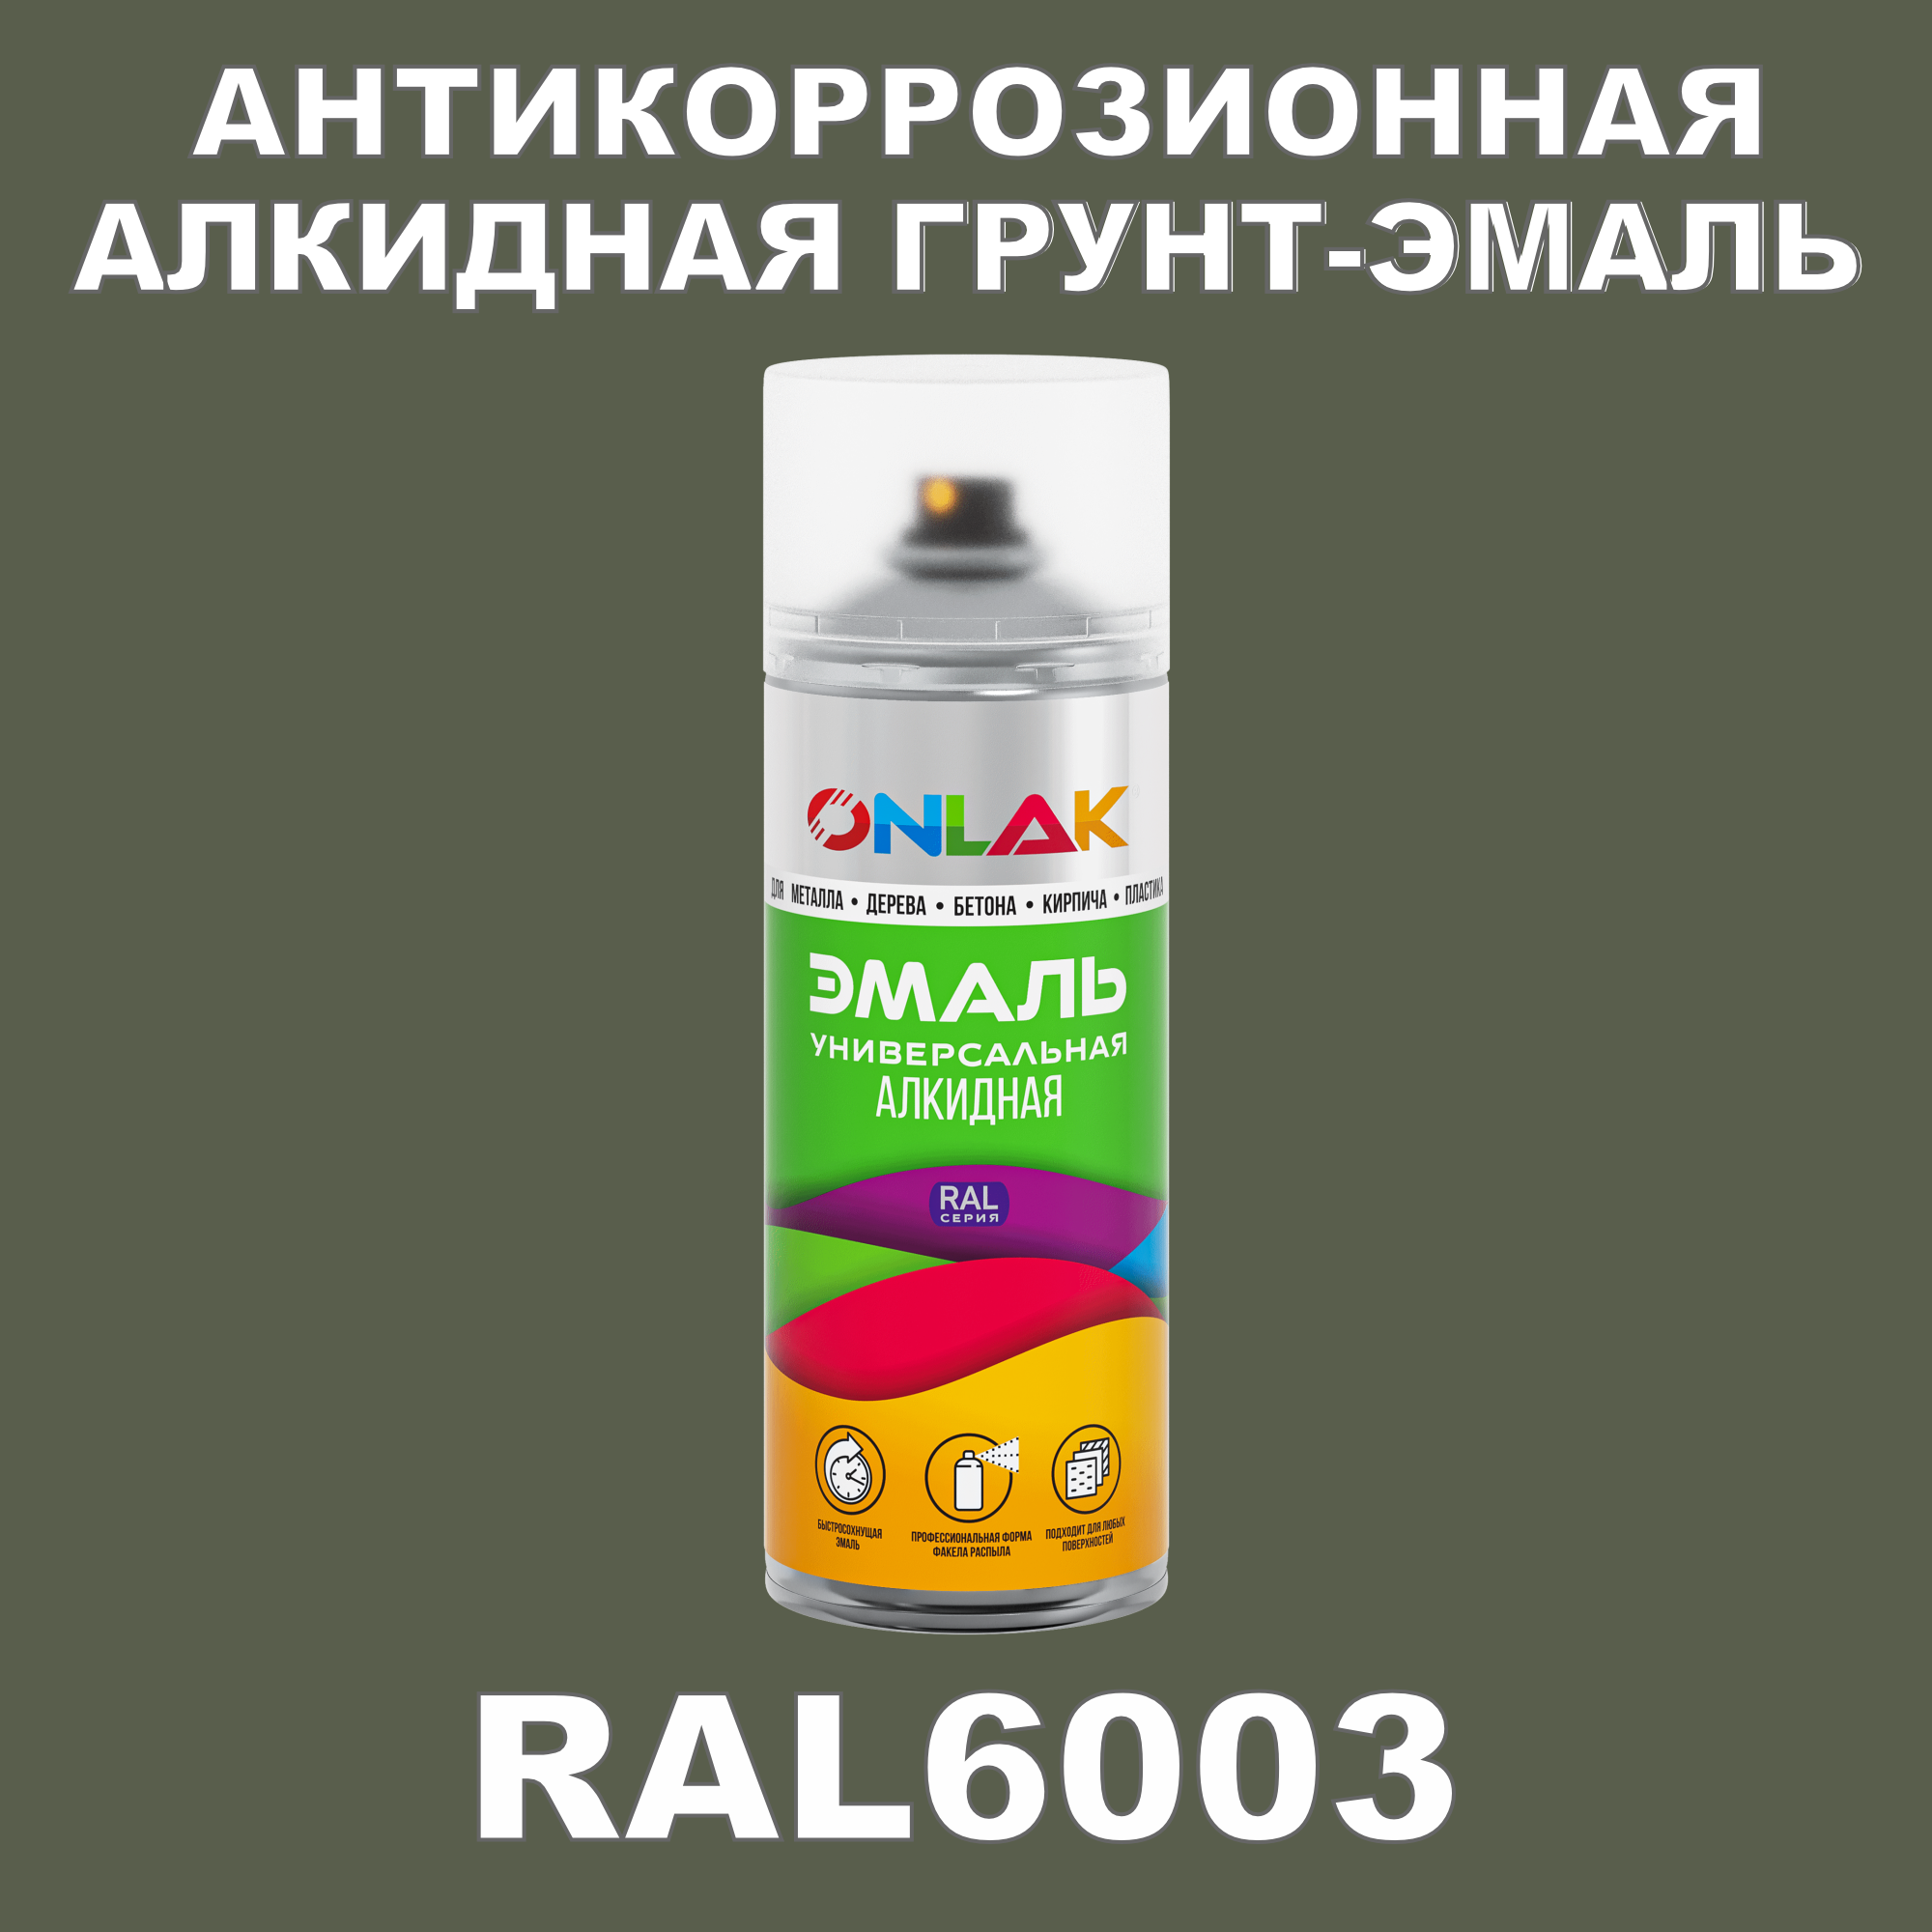 Антикоррозионная грунт-эмаль ONLAK RAL6003 полуматовая для металла и защиты от ржавчины антикоррозионная грунт эмаль onlak ral3004 полуматовая для металла и защиты от ржавчины